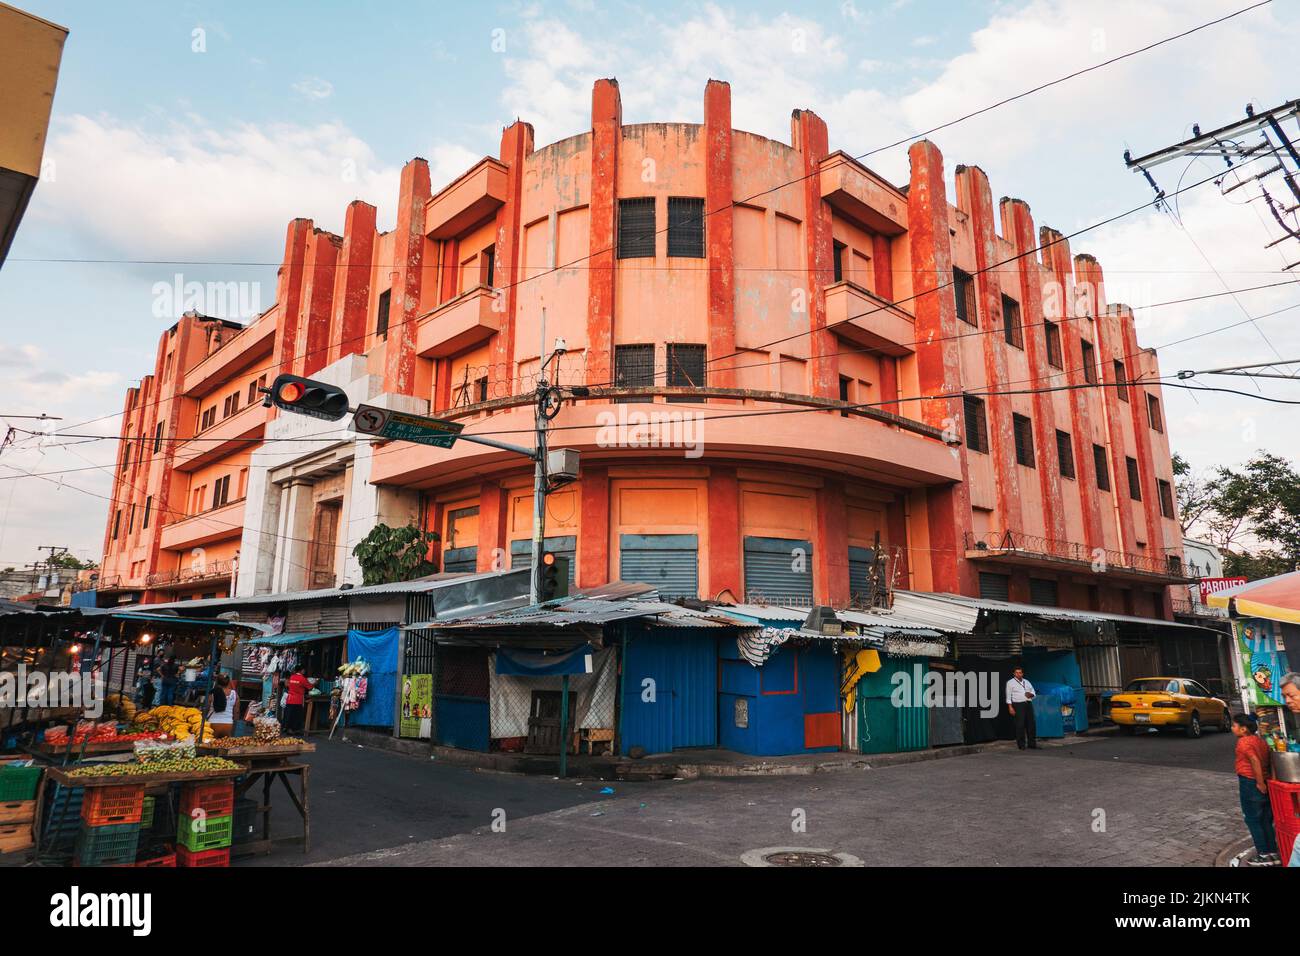 a vibrant orange retro building in central San Salvador, El Salvador Stock Photo